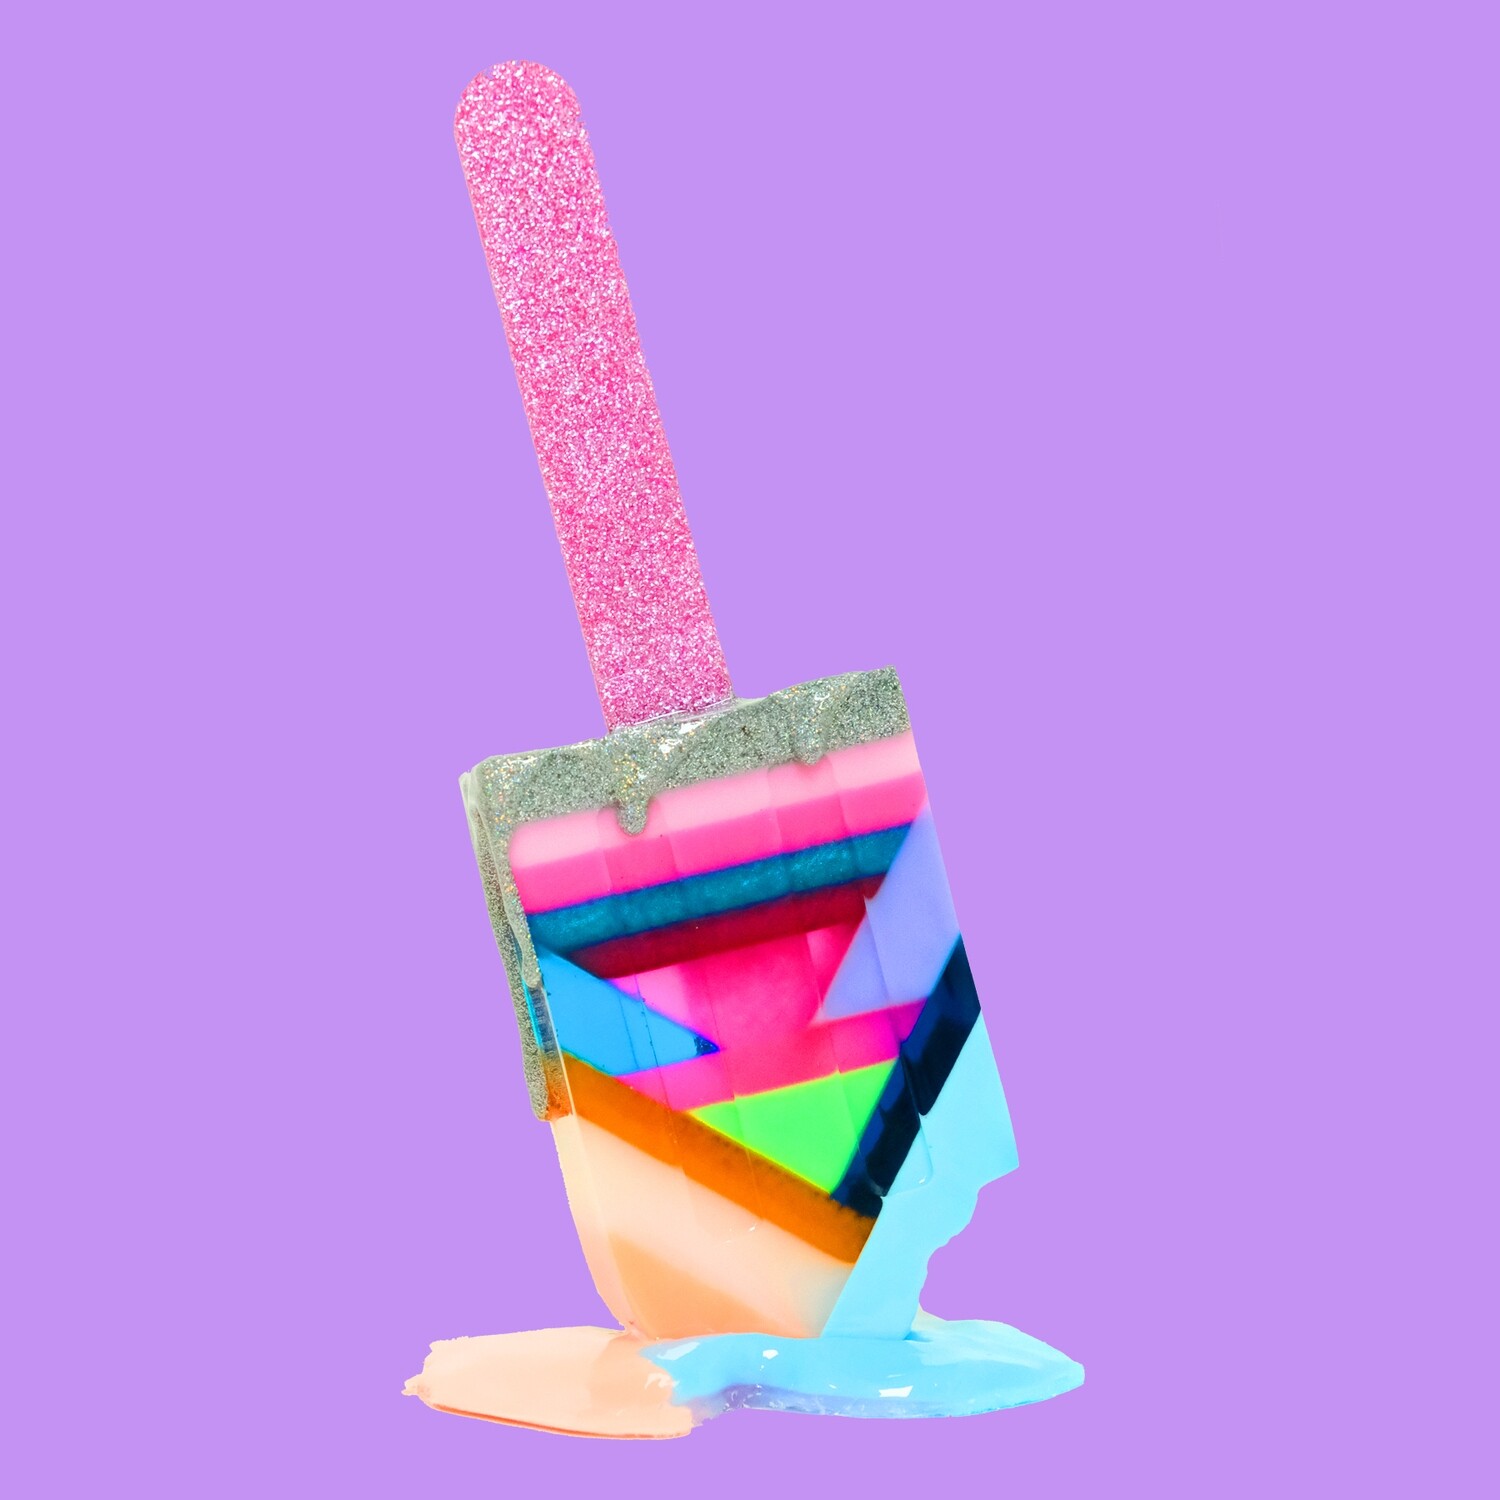 Melting Popsicle Art - Bigger Juicy Pop - Original Melting Pops